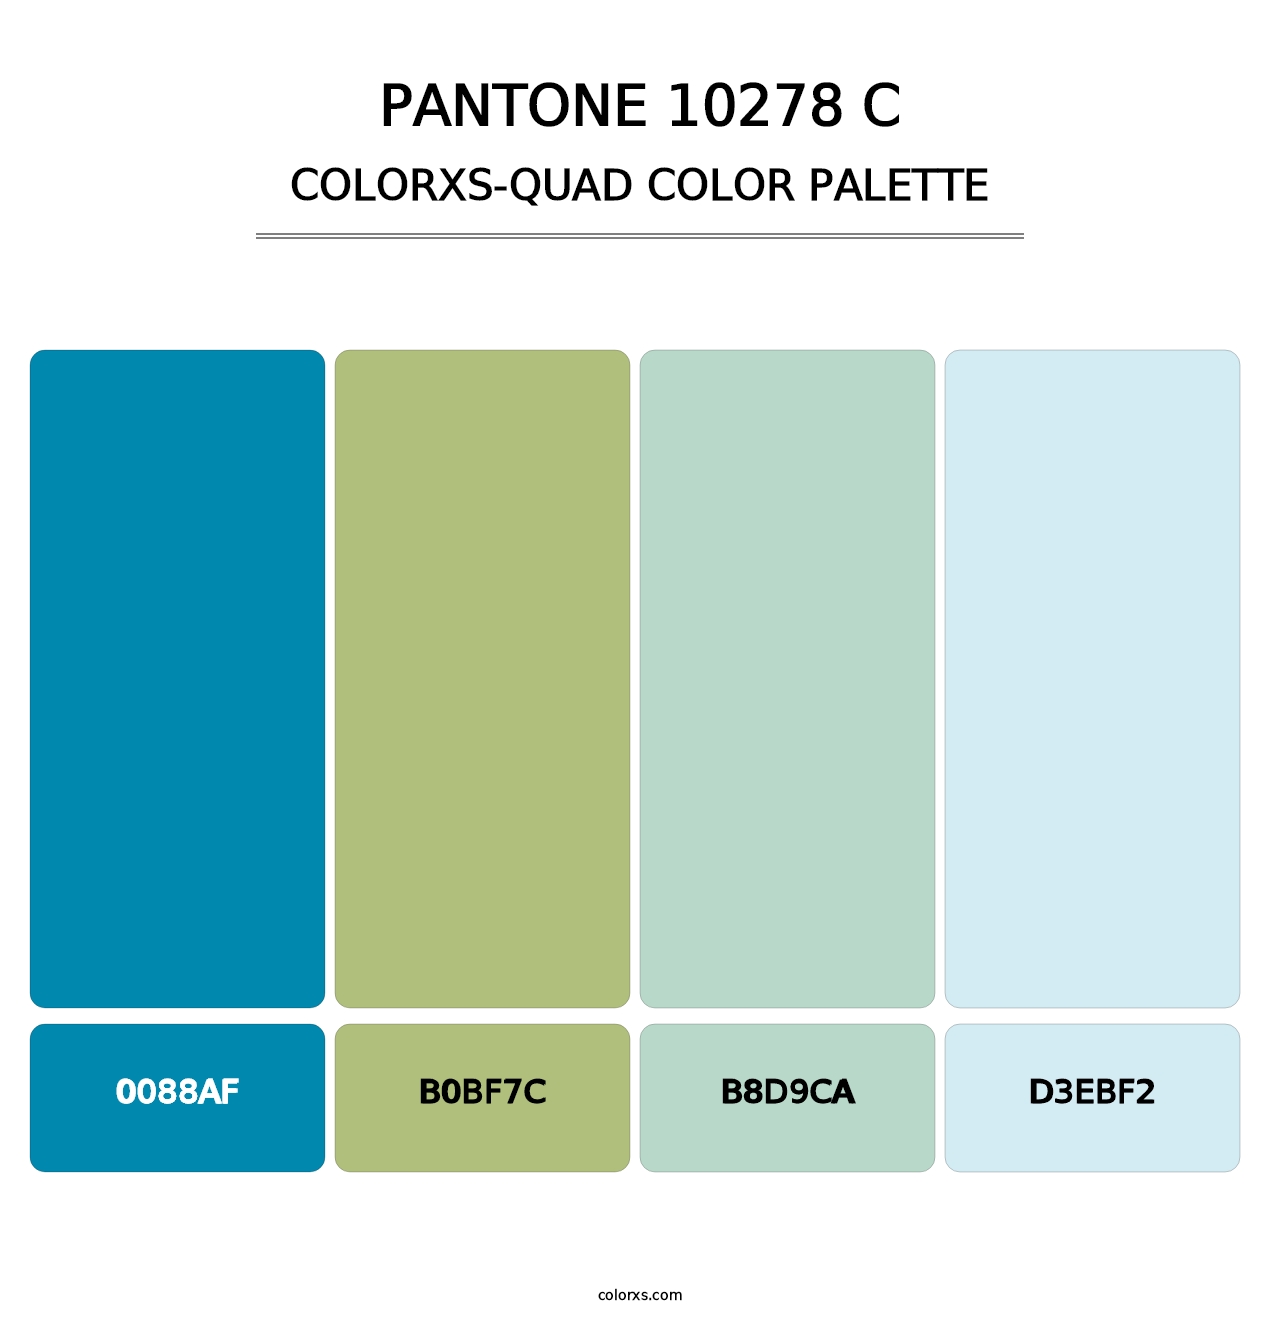 PANTONE 10278 C - Colorxs Quad Palette